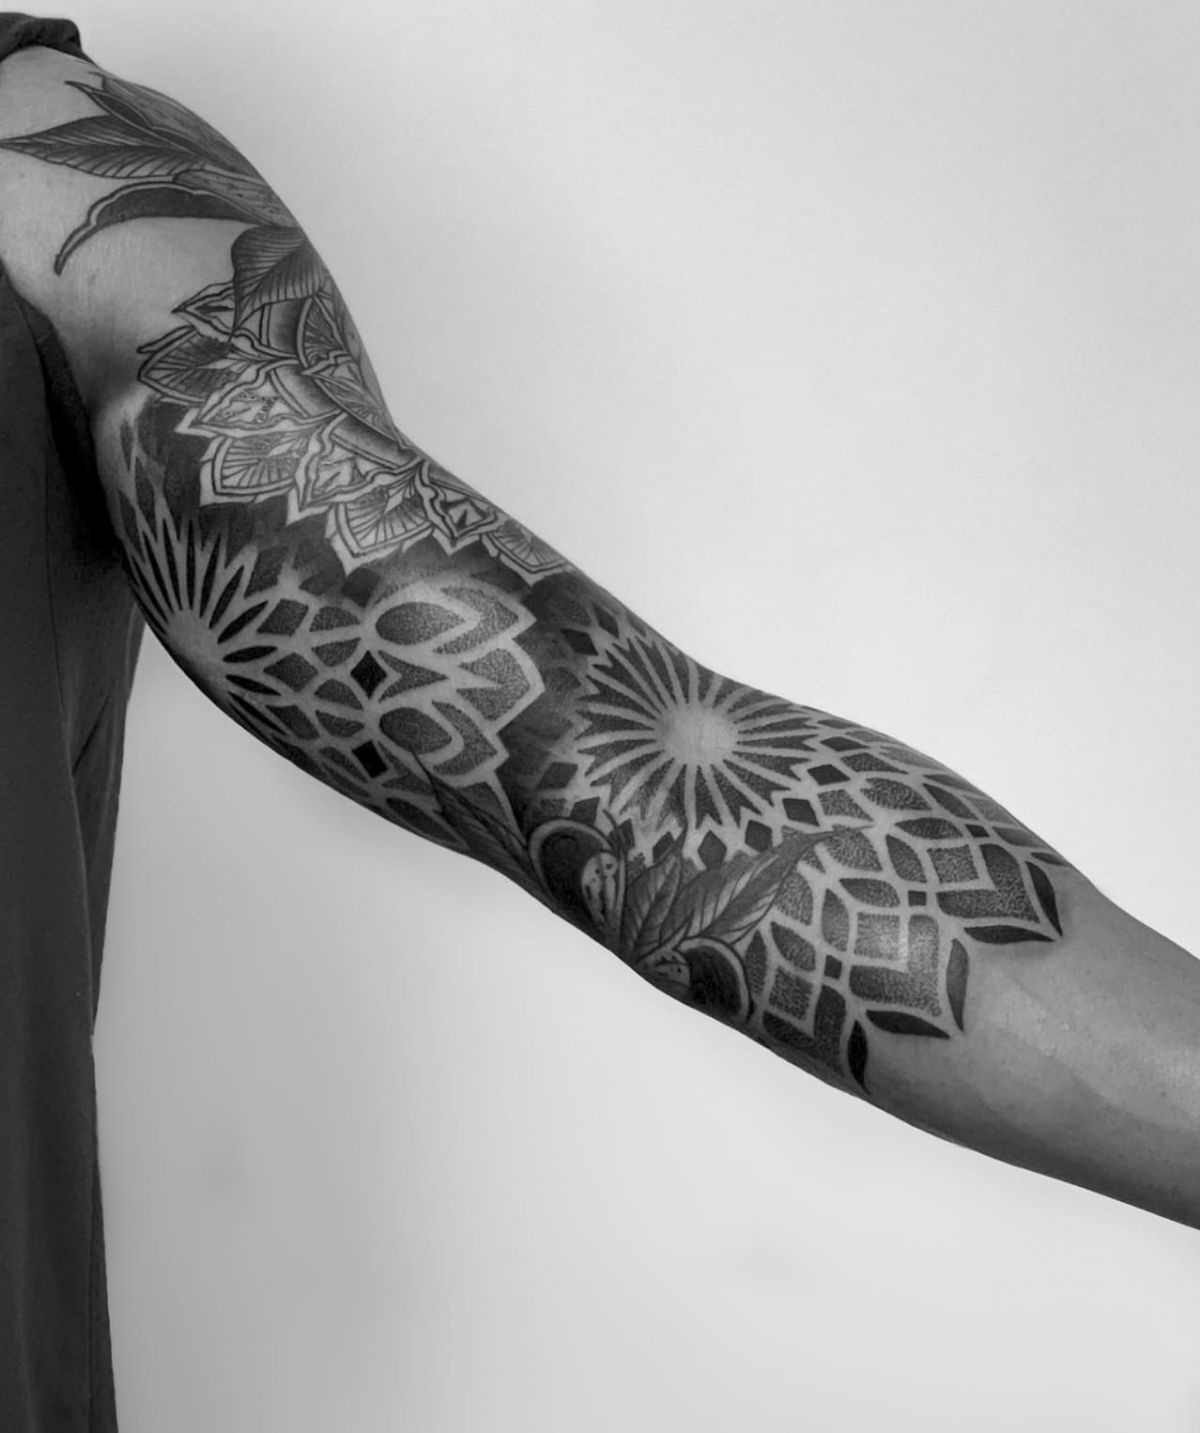 Tatuajes en el brazo. Hazte el tuyo en Noble Art